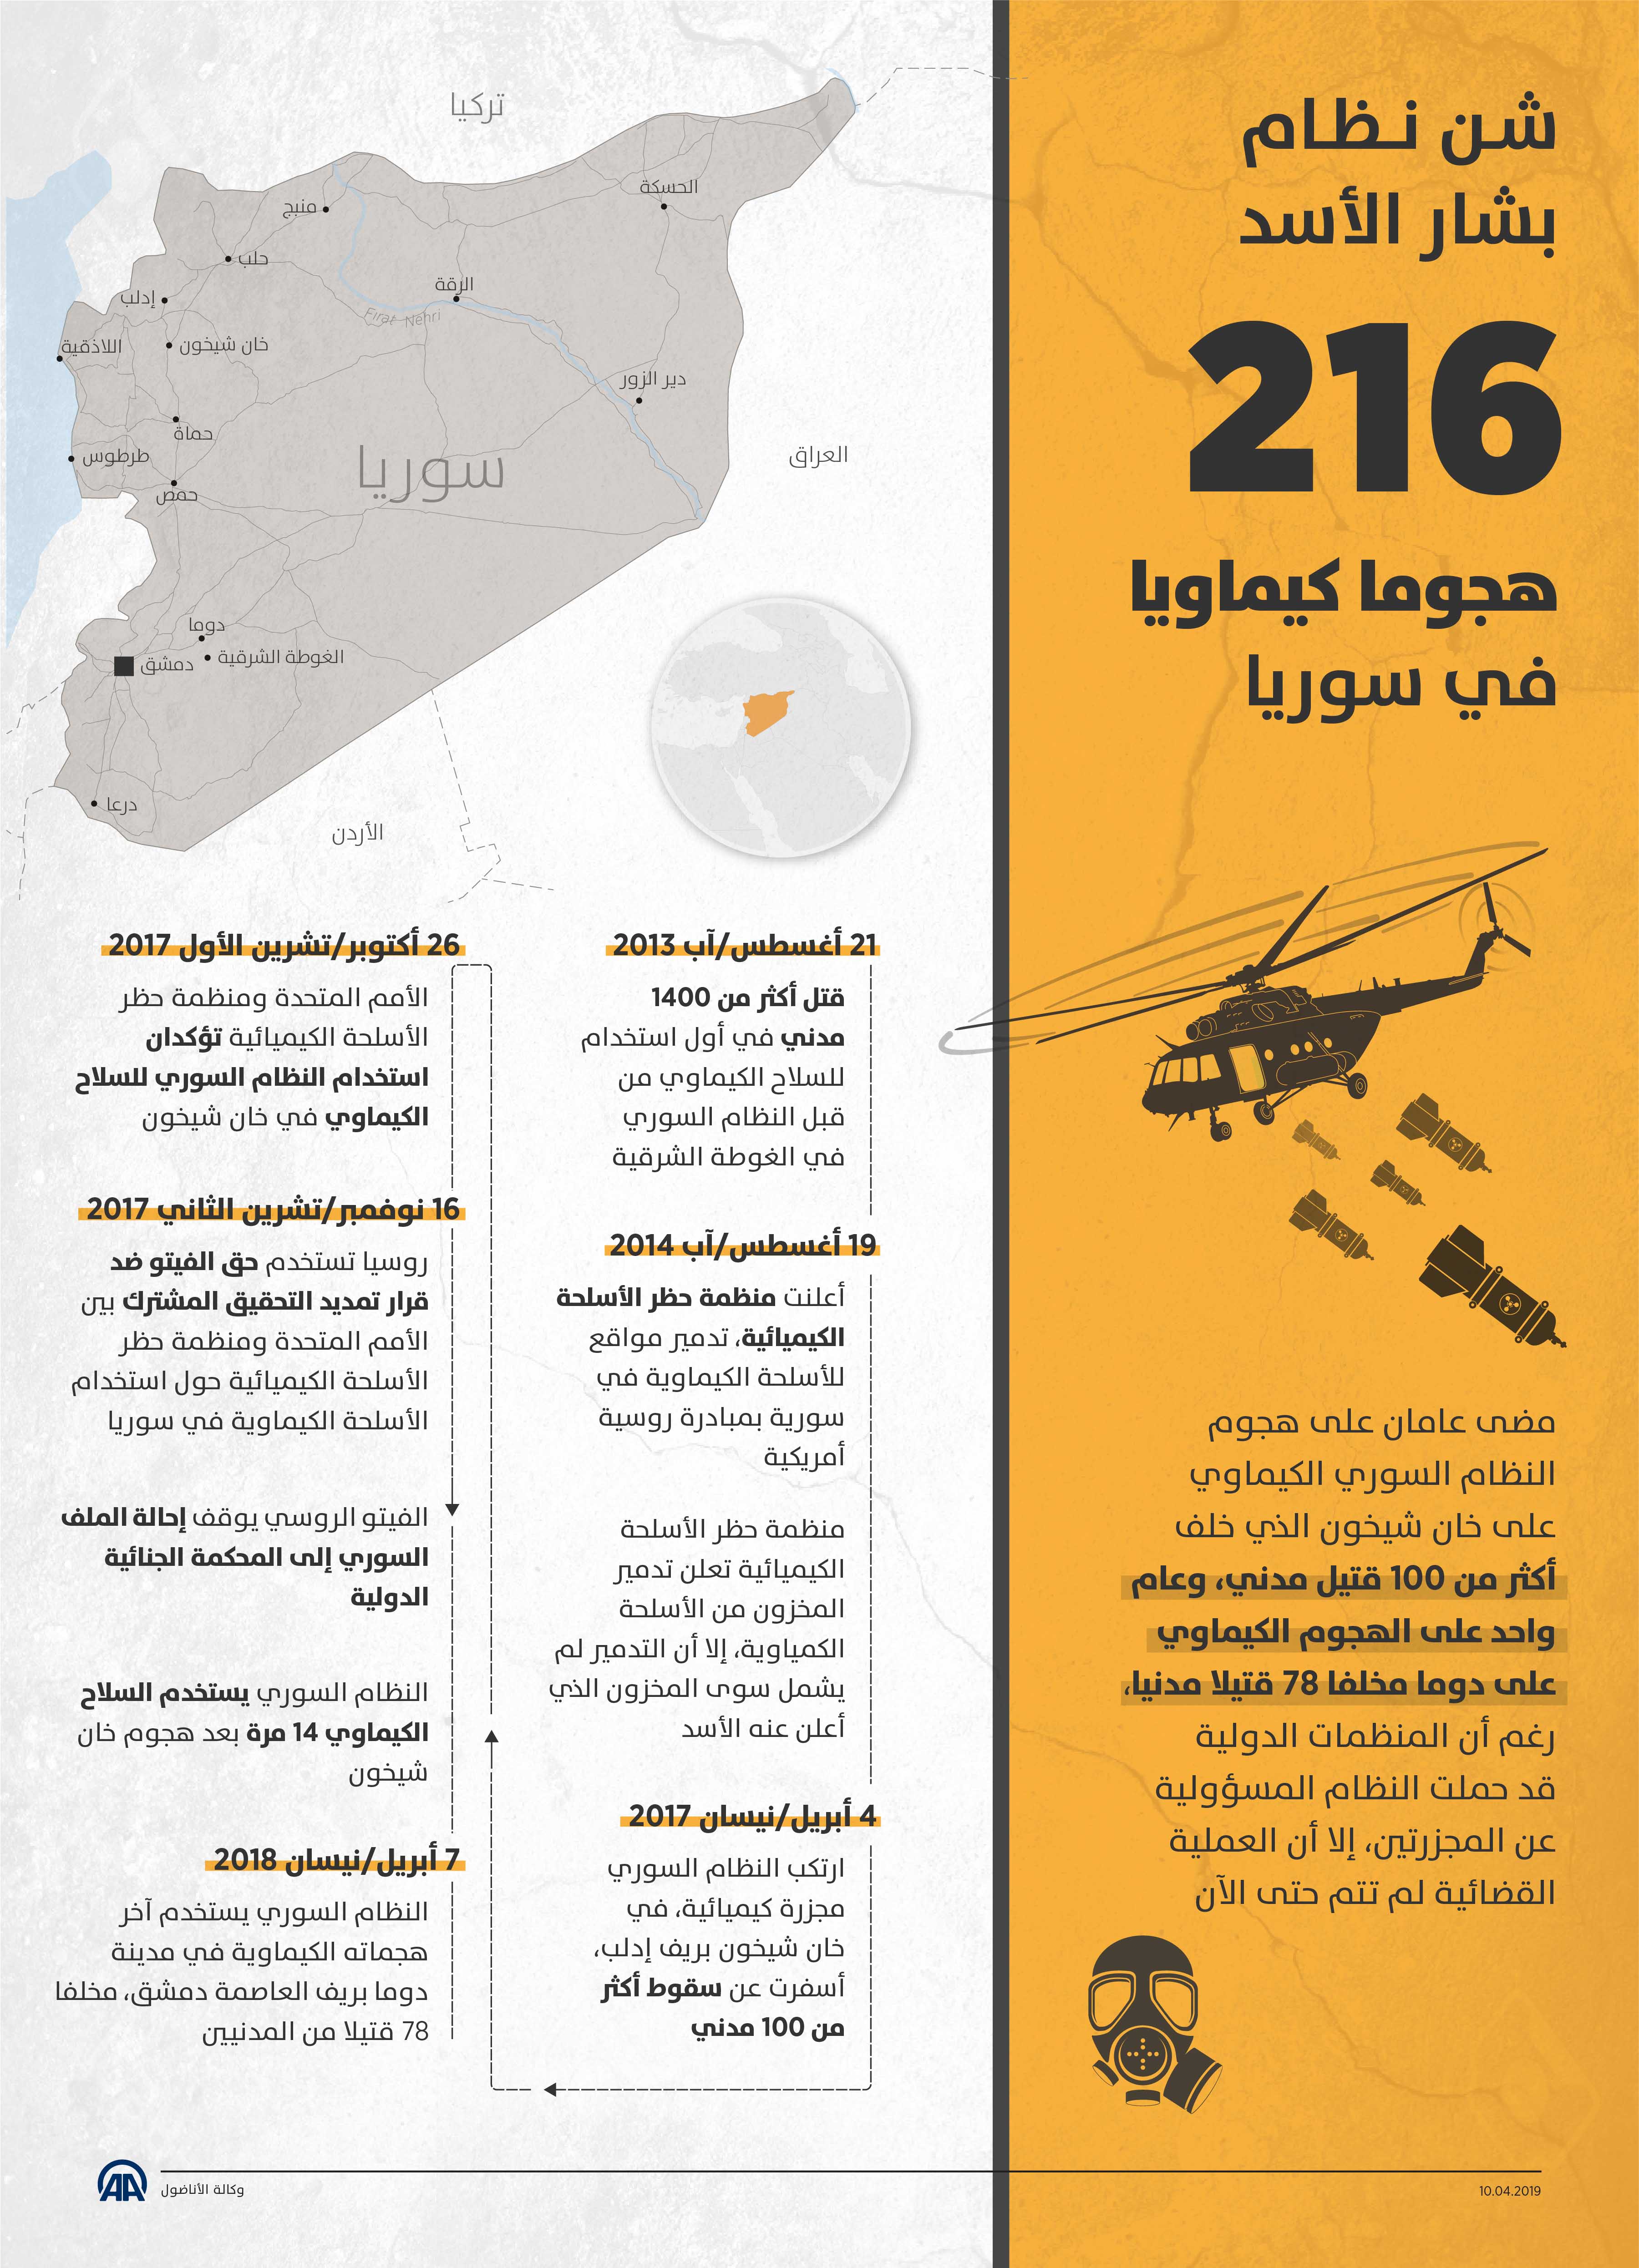 شن نظام الأسد 216 هجوما كيماويا في سوريا